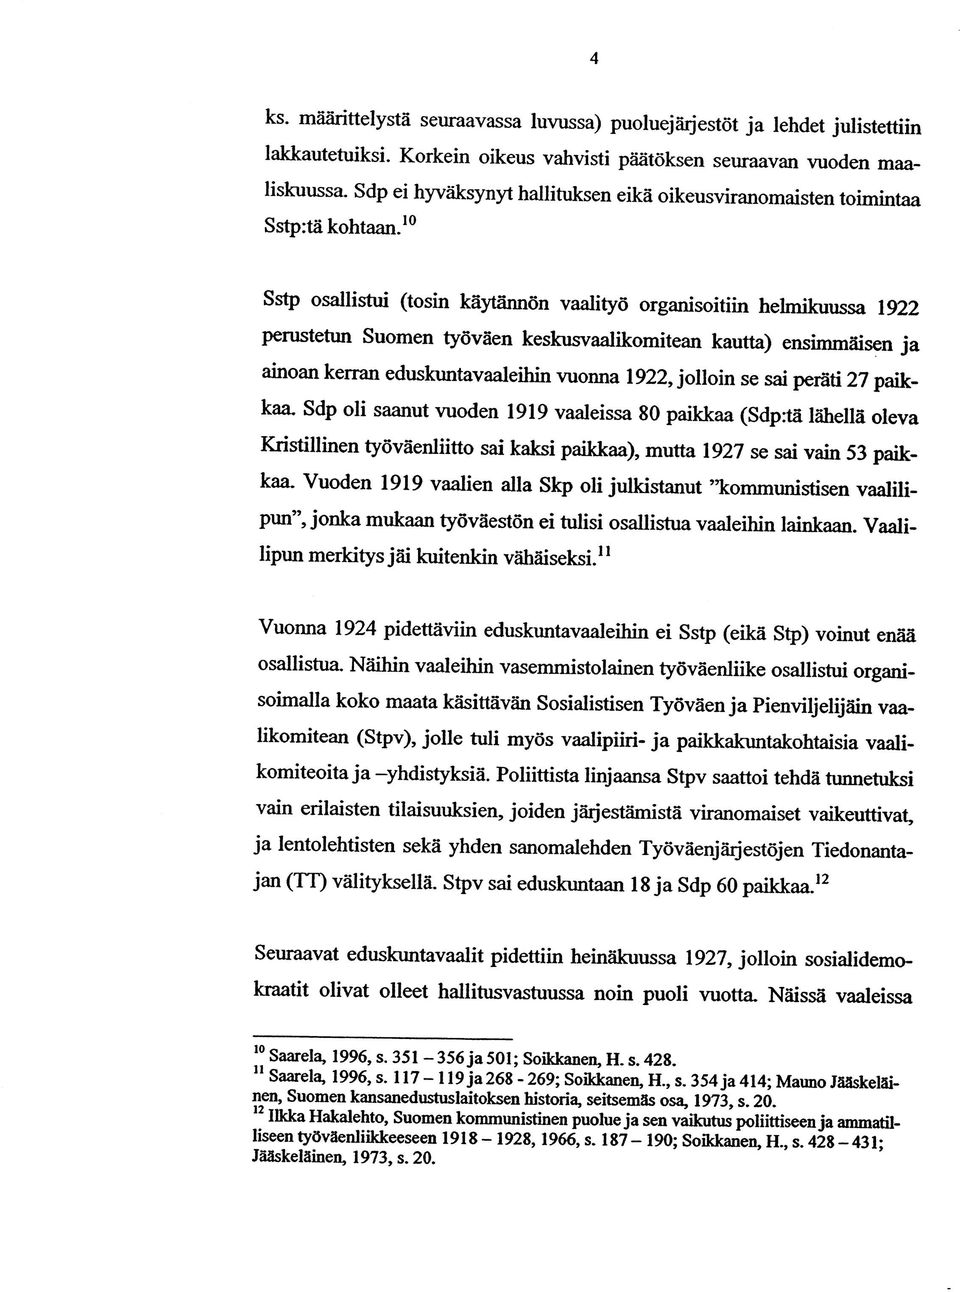 10 Sstp osallistui (tosin käytännön vaalityö organisoitiin helmikuussa 1922 perustetun Suomen työväen keskusvaalikomitean kautta) ensimmäisen ja ainoan kerran eduskuntavaaleihin vuonna 1922, jolloin